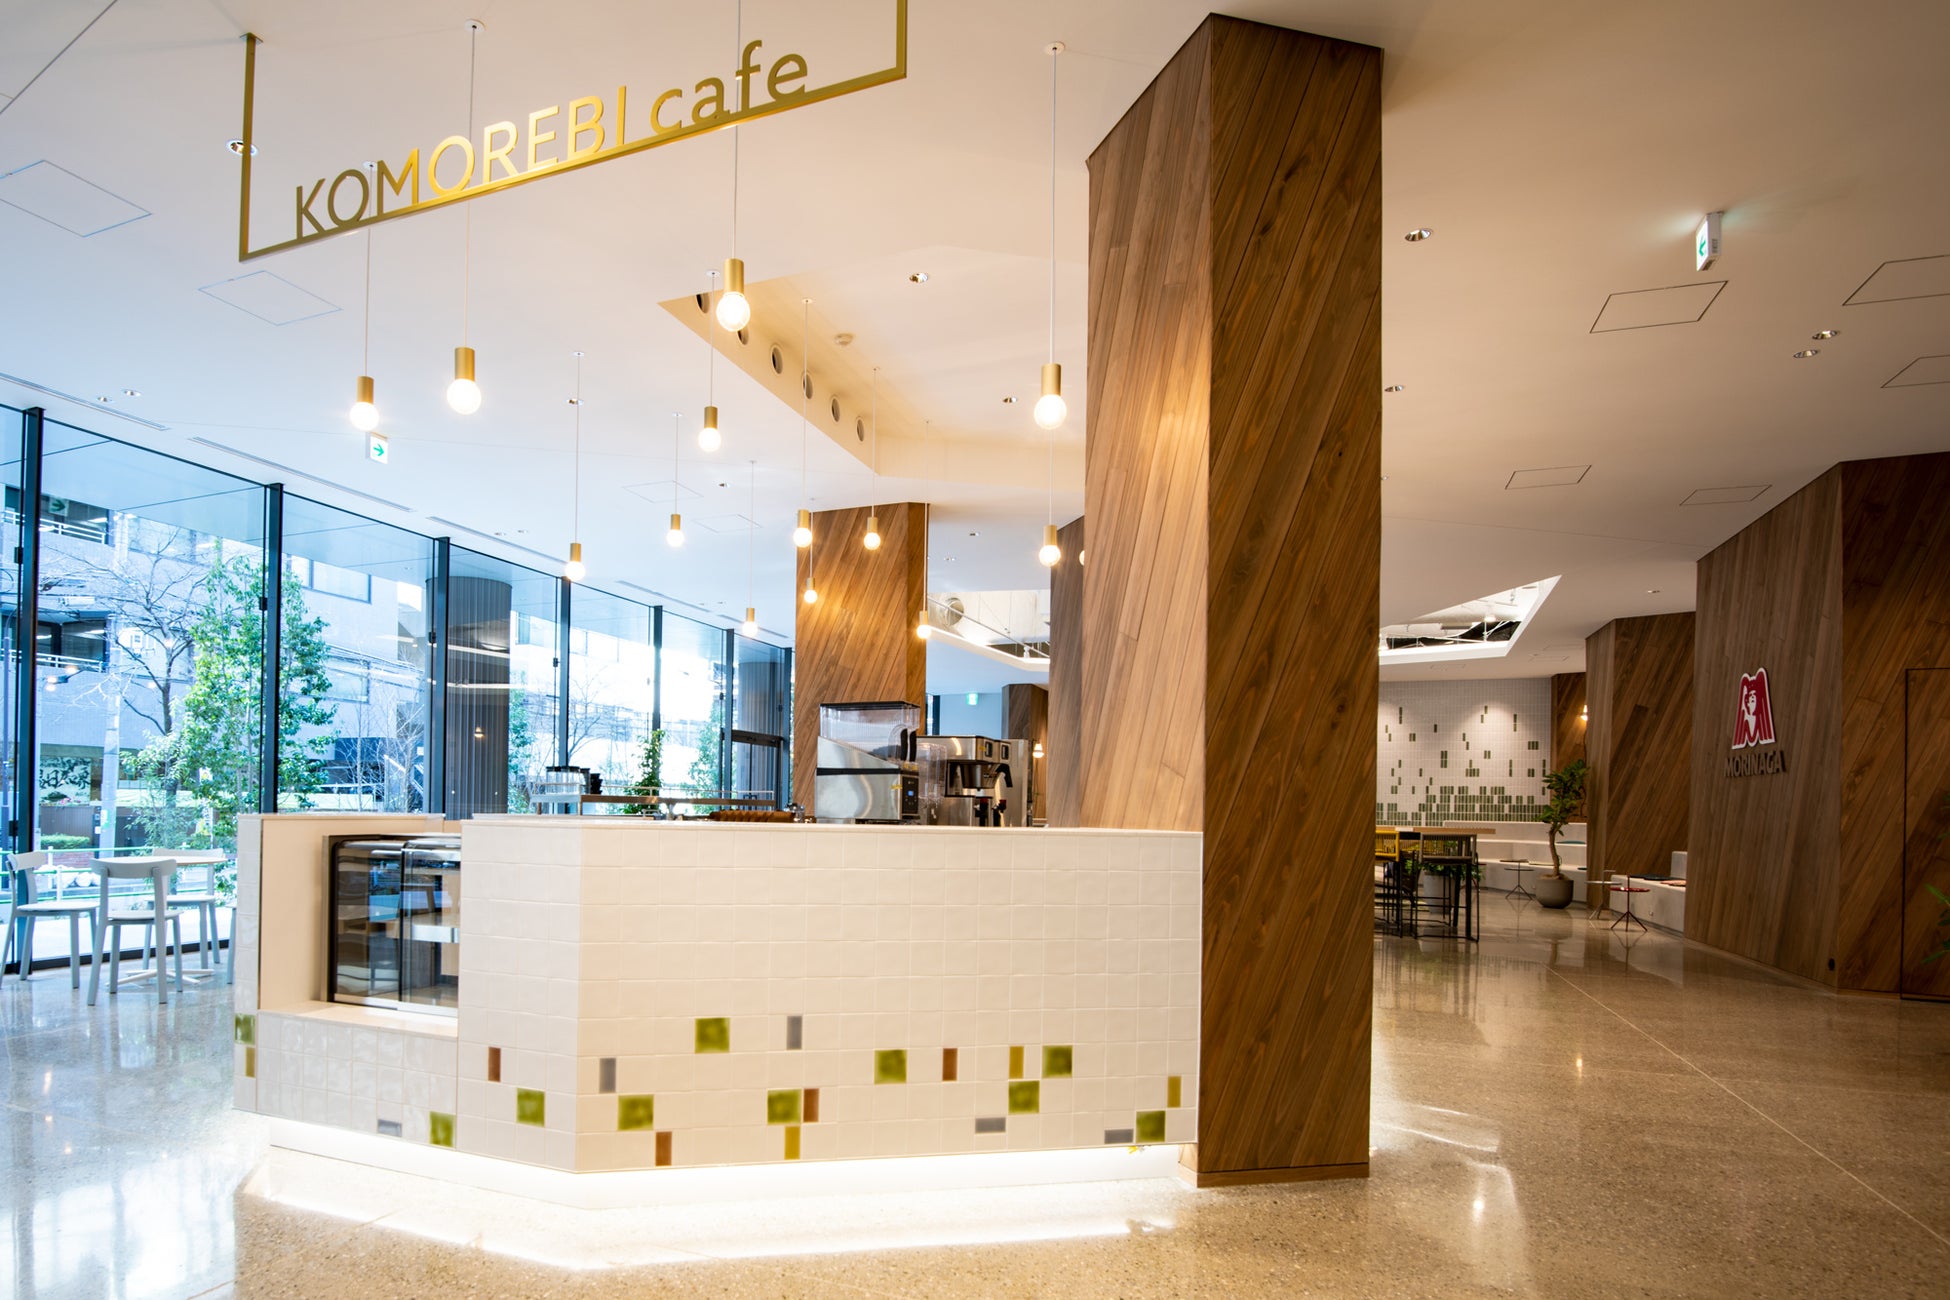 社食の企画/運営ノンピ、森永製菓新本社ビル1階に皆が集まれる「KOMOREBI cafe」をオープン。